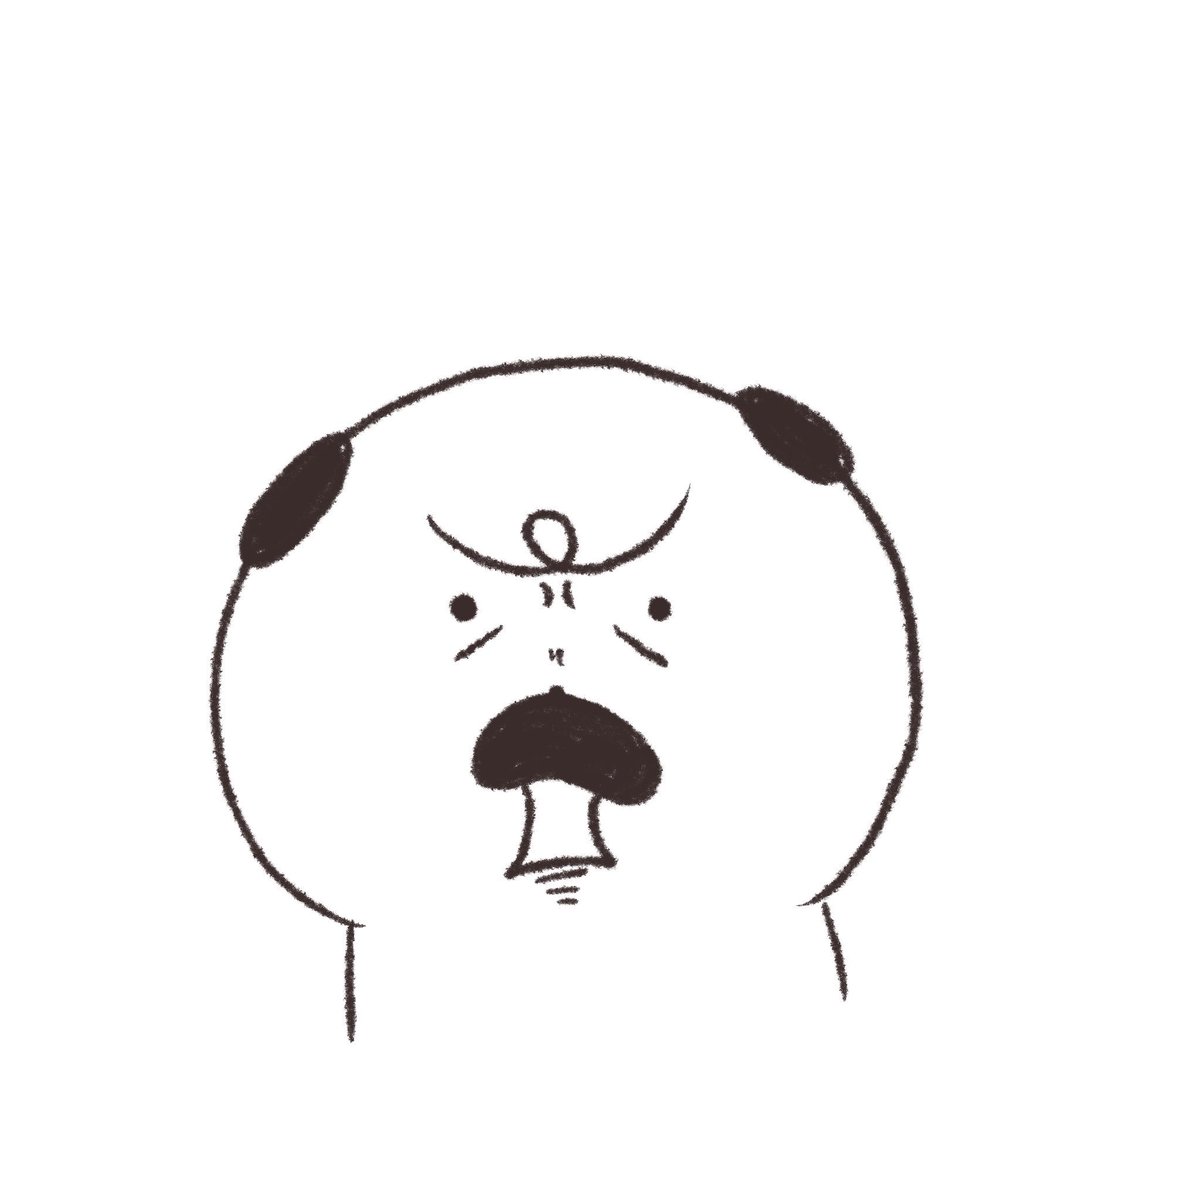 Marubooo まるぼー Twitterren イラスト描いてると自分の表情も変わる 絵描きさんと繋がりたい マスコット Pug パグ イラスト マンガ ごろごろ 日常 毎日 犬 Illustration Illustrator Mydrawing 変顔 かわいい ゆるい いぬ キャラクター Dog つ